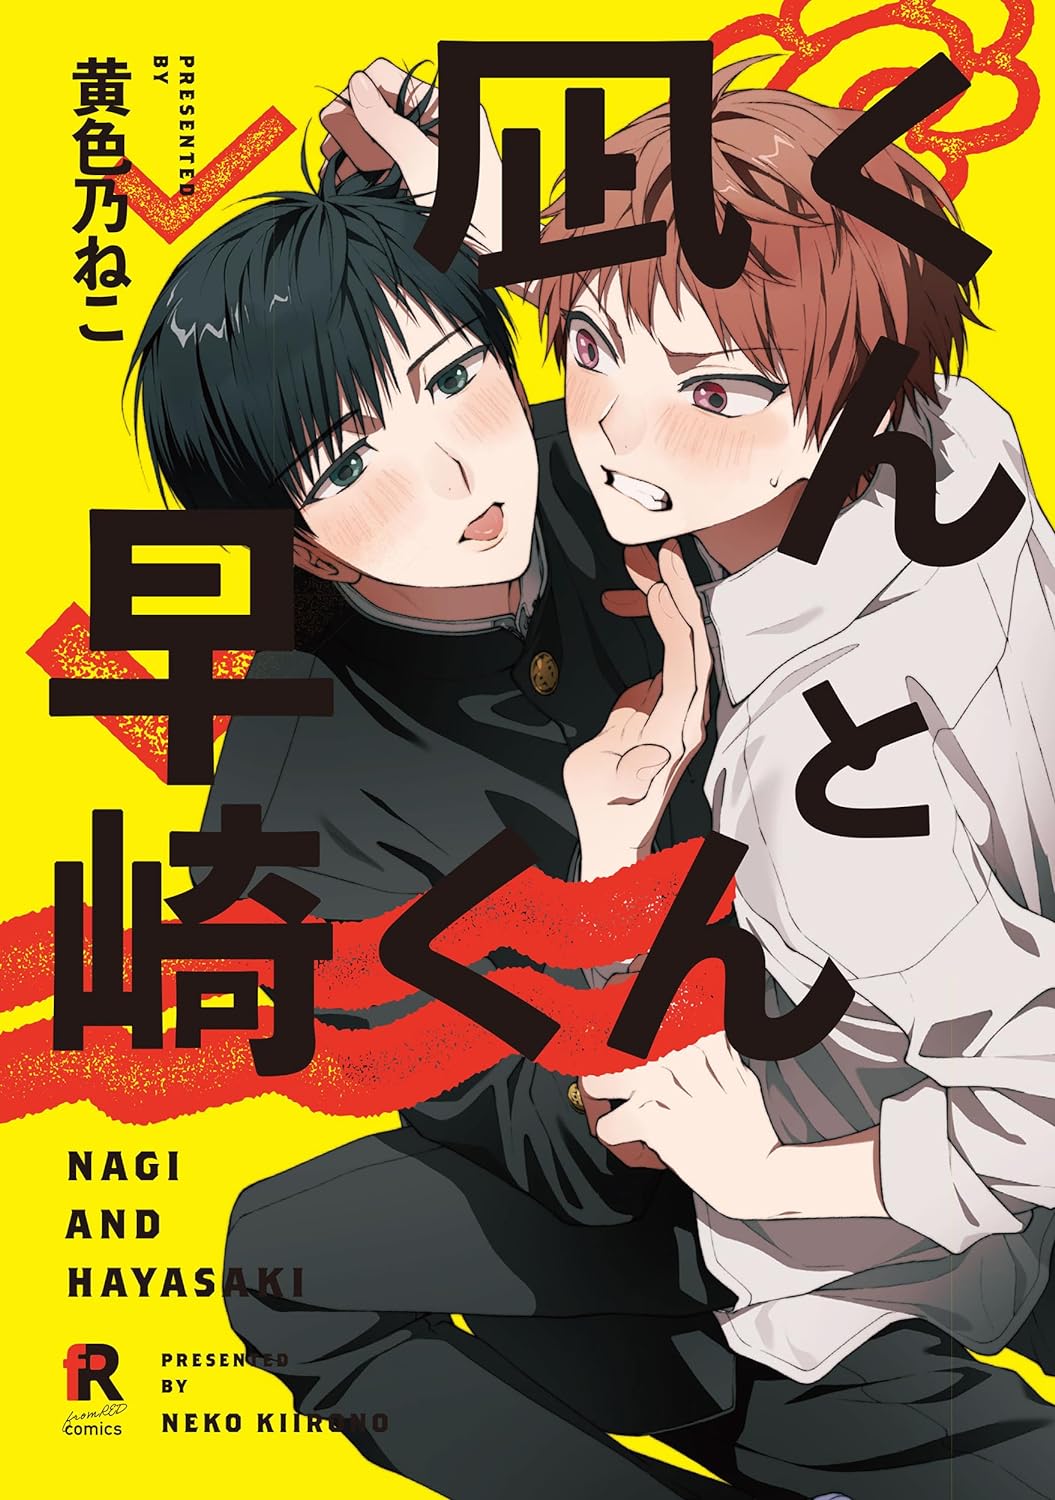 Nagi y Hayasaki